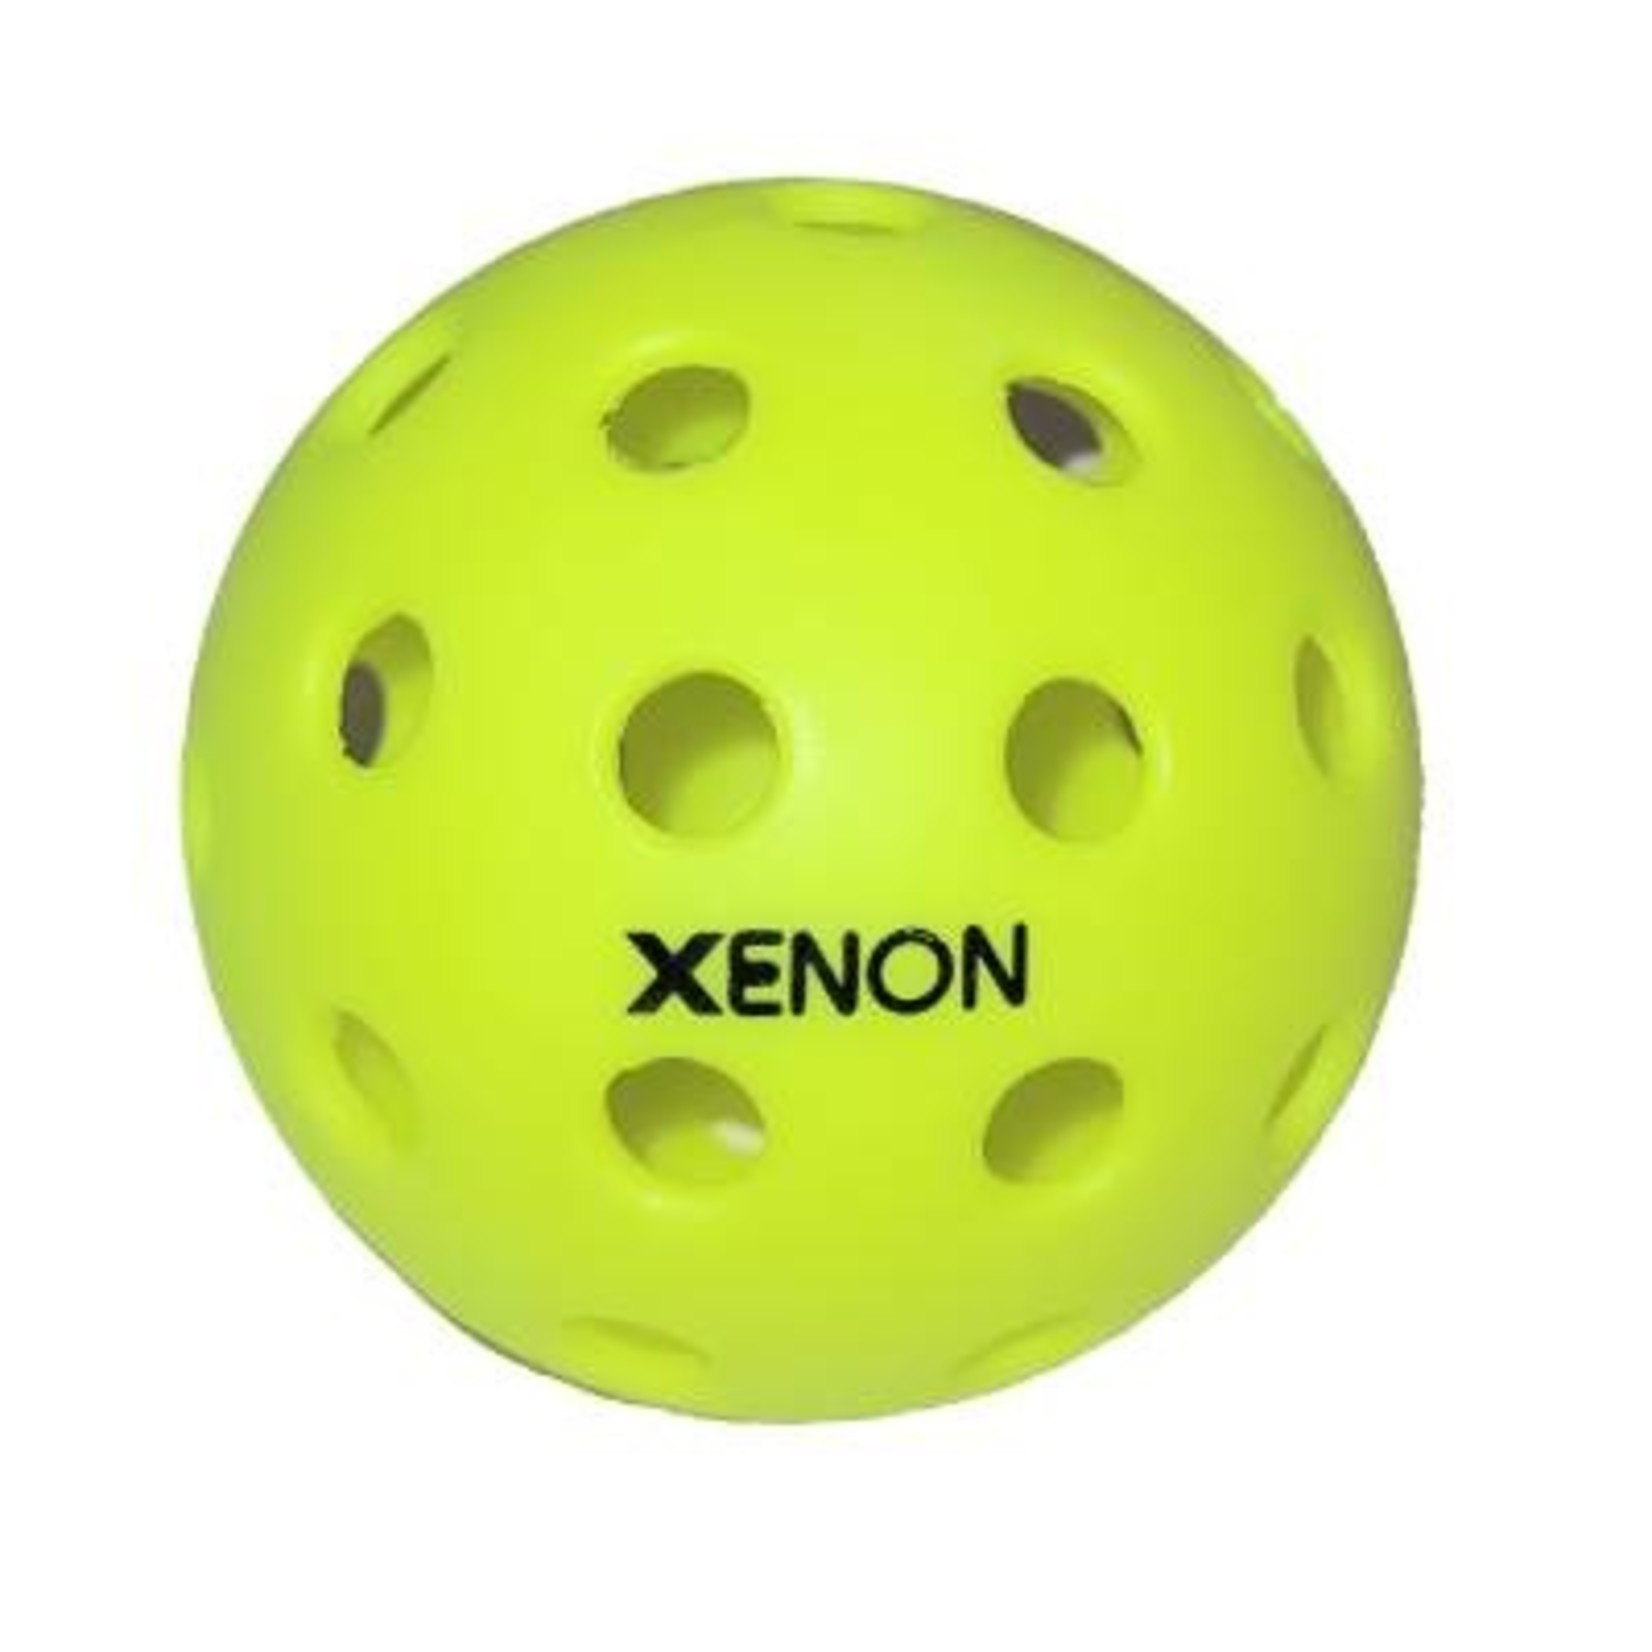 Xenon Pickleball Balls